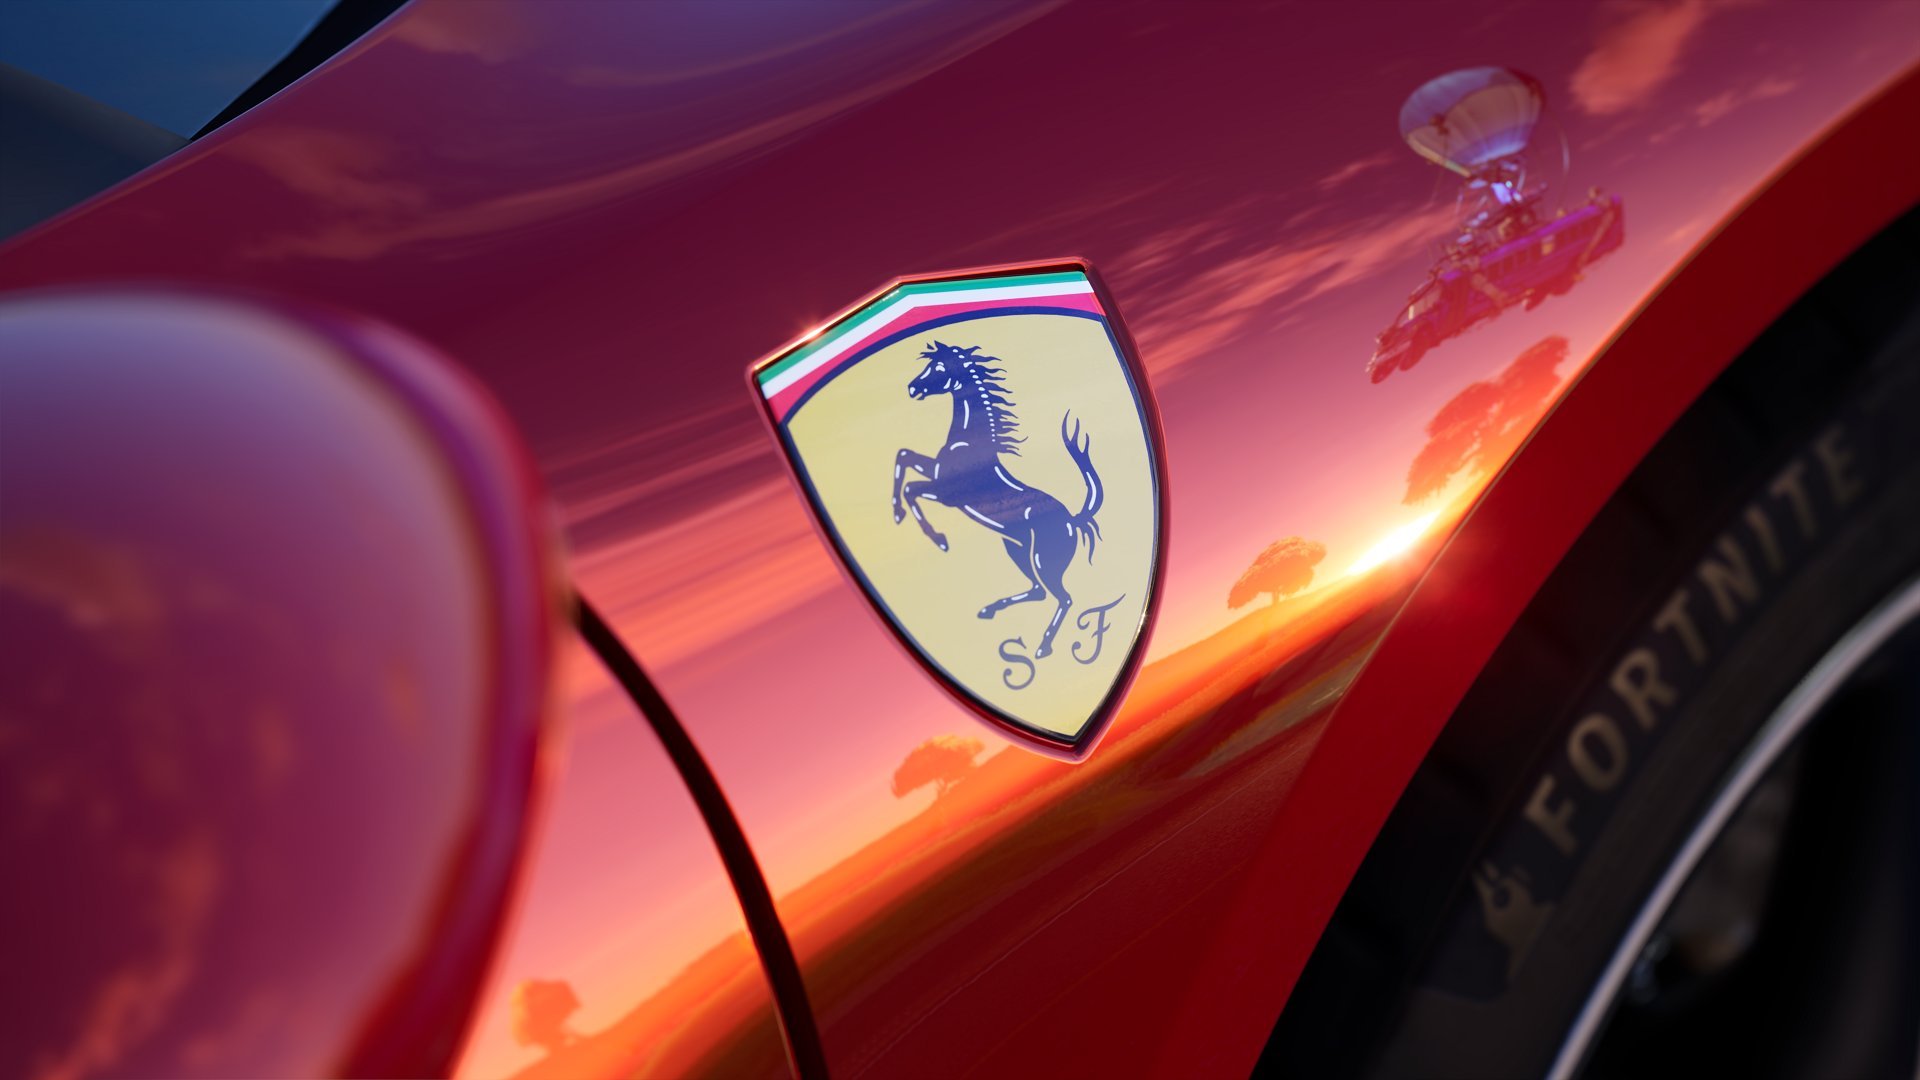 More information about "Da oggi la Ferrari 296 GTB disponibile in Fortnite"